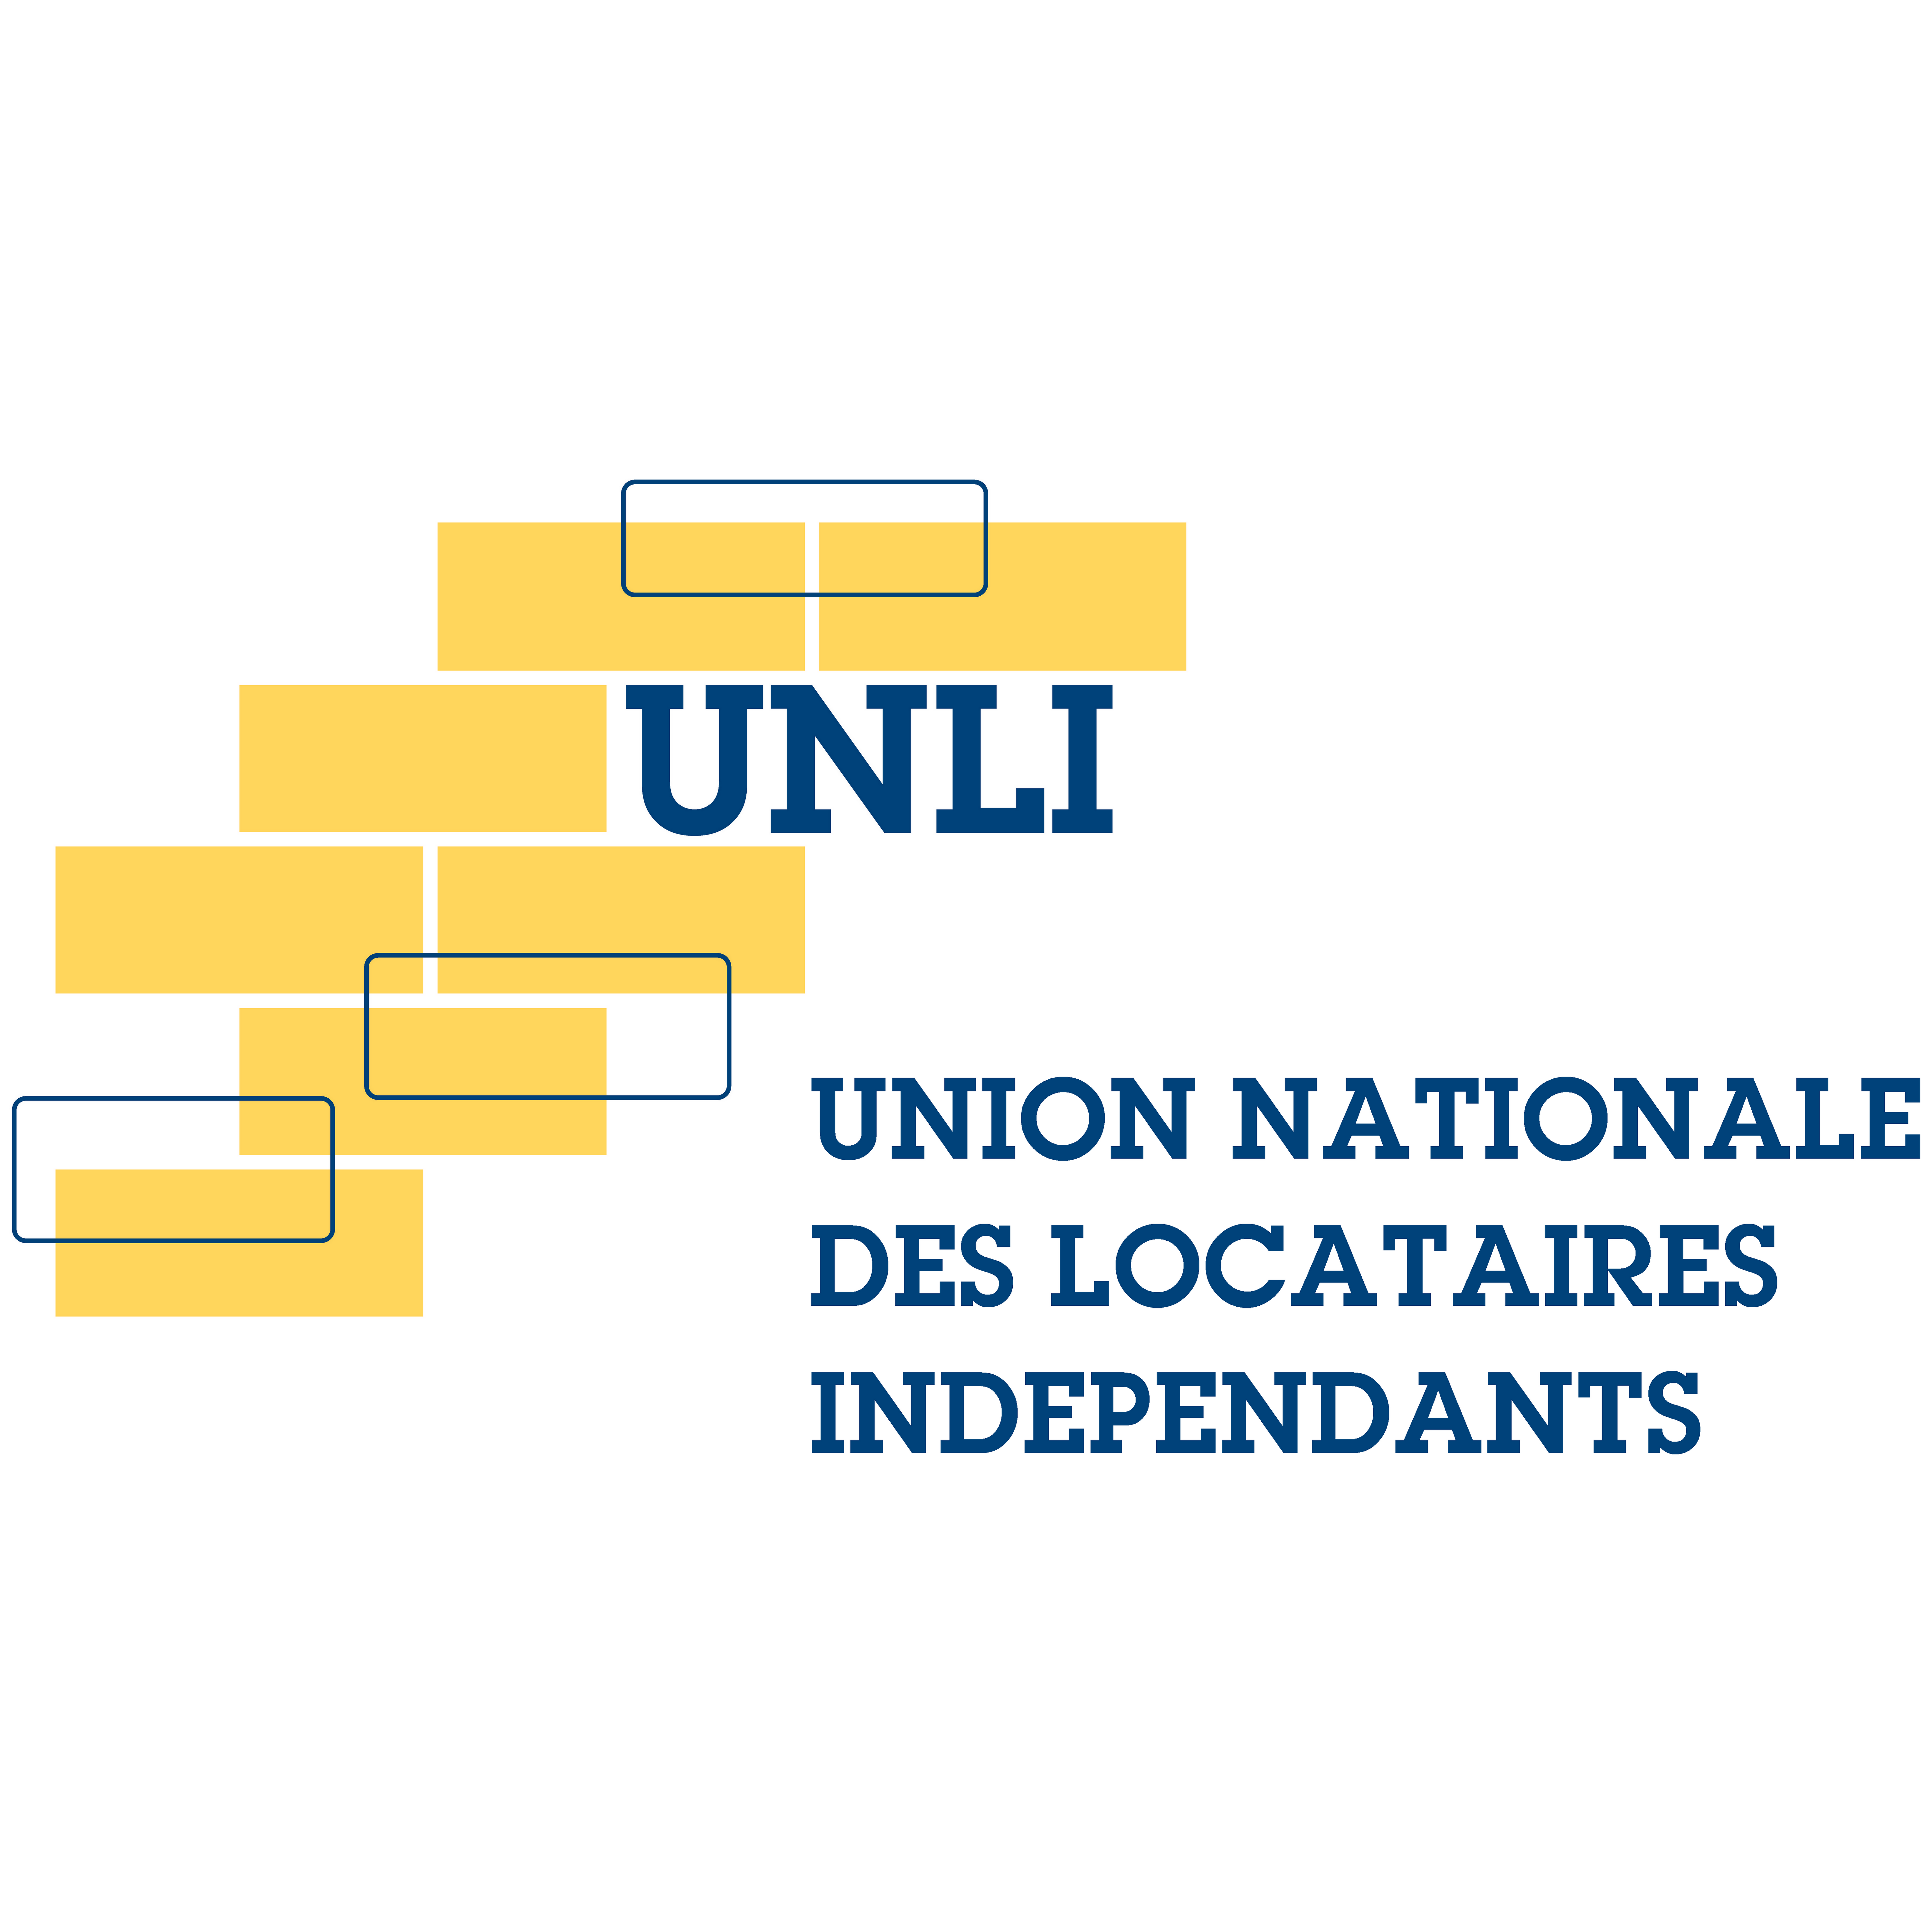 UNION NATIONALE DES LOCATAIRES INDEPENDANTS (UNLI)